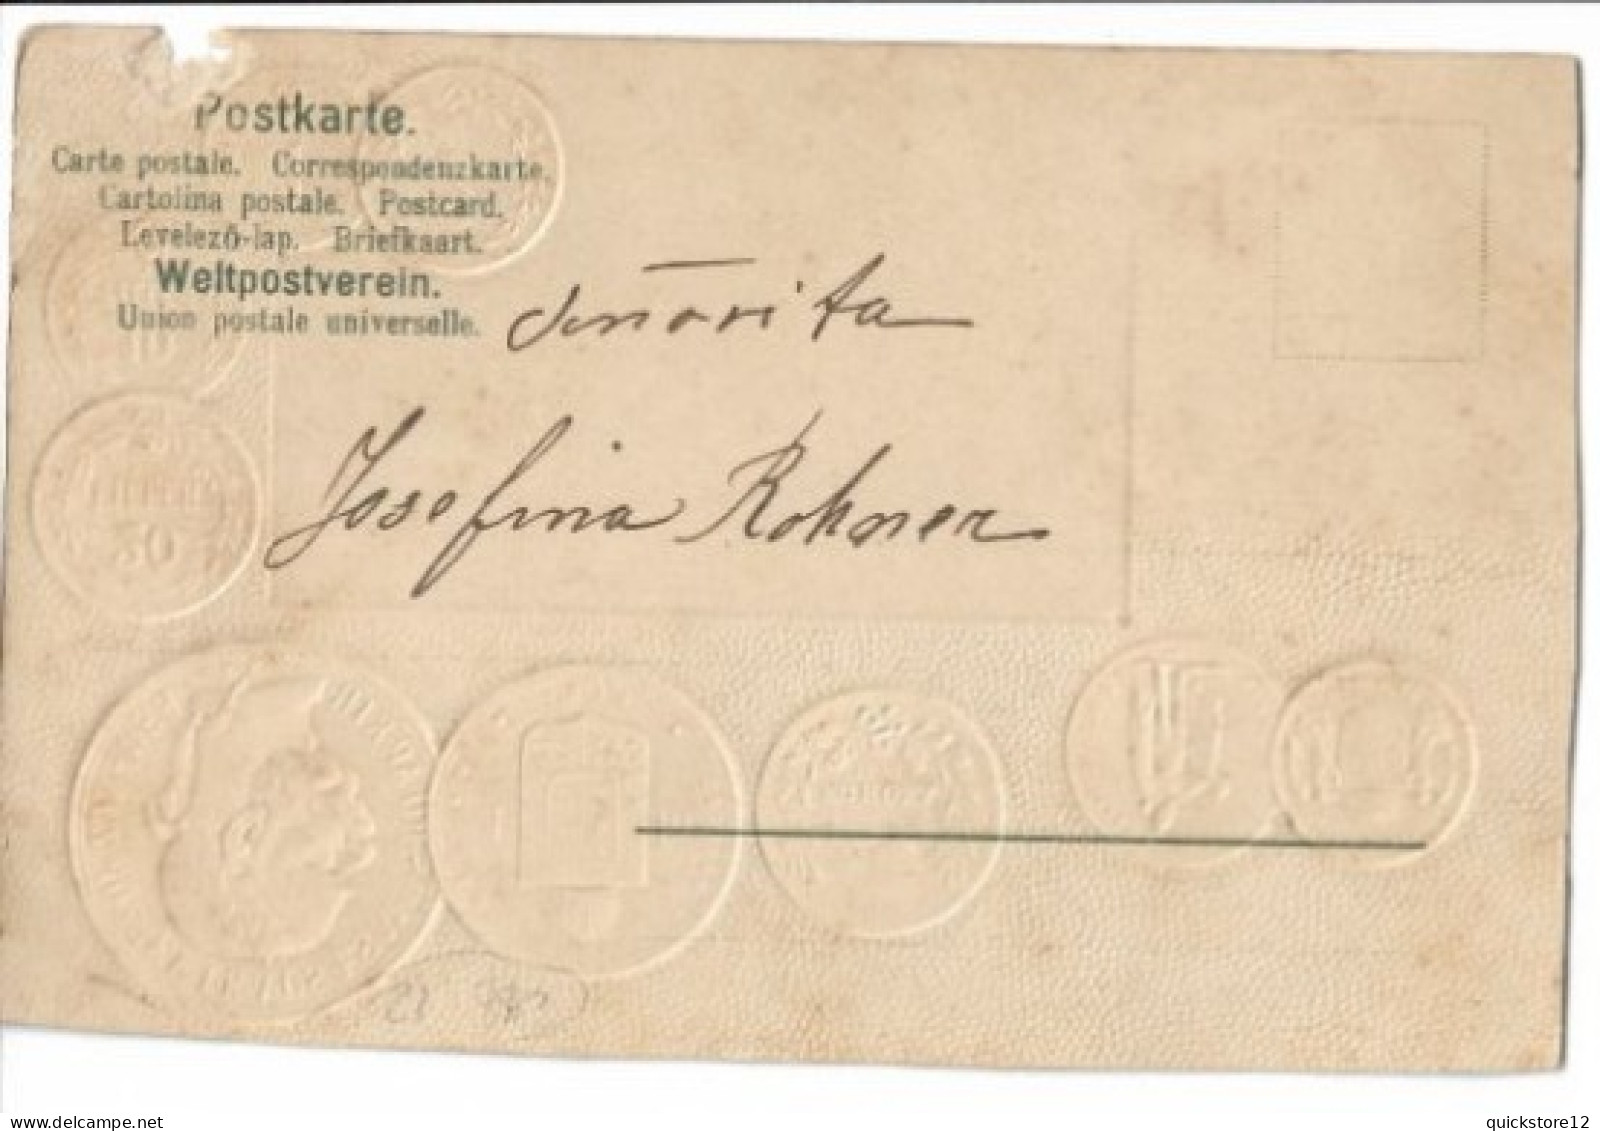 Postal Numismática 7267 - Münzen (Abb.)